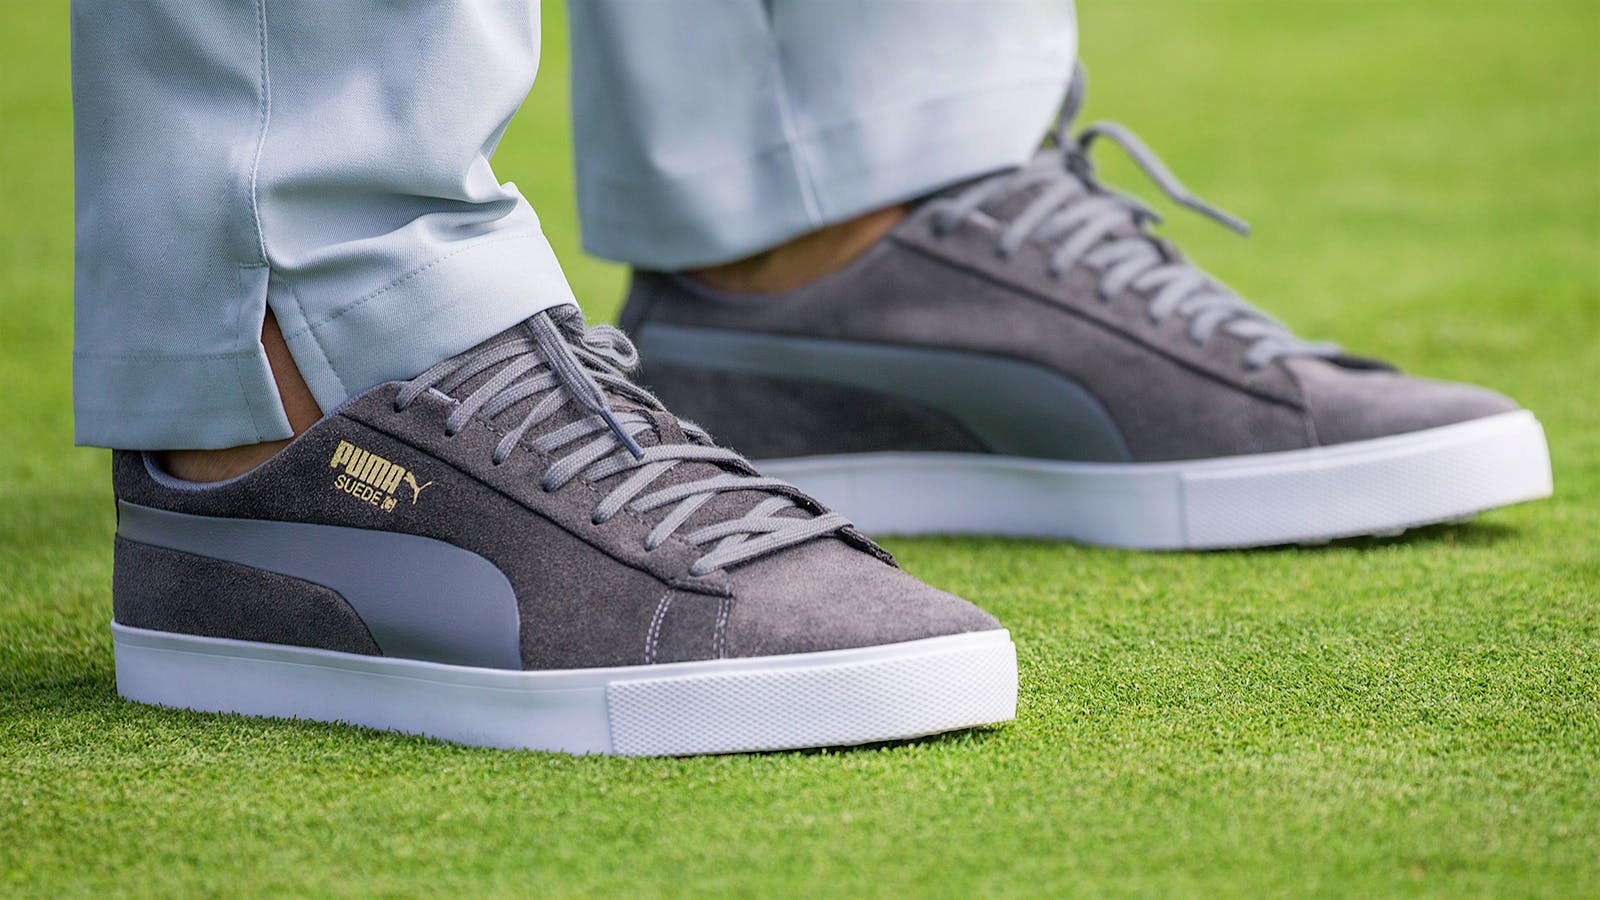 Puma Suede G Golf Shoes